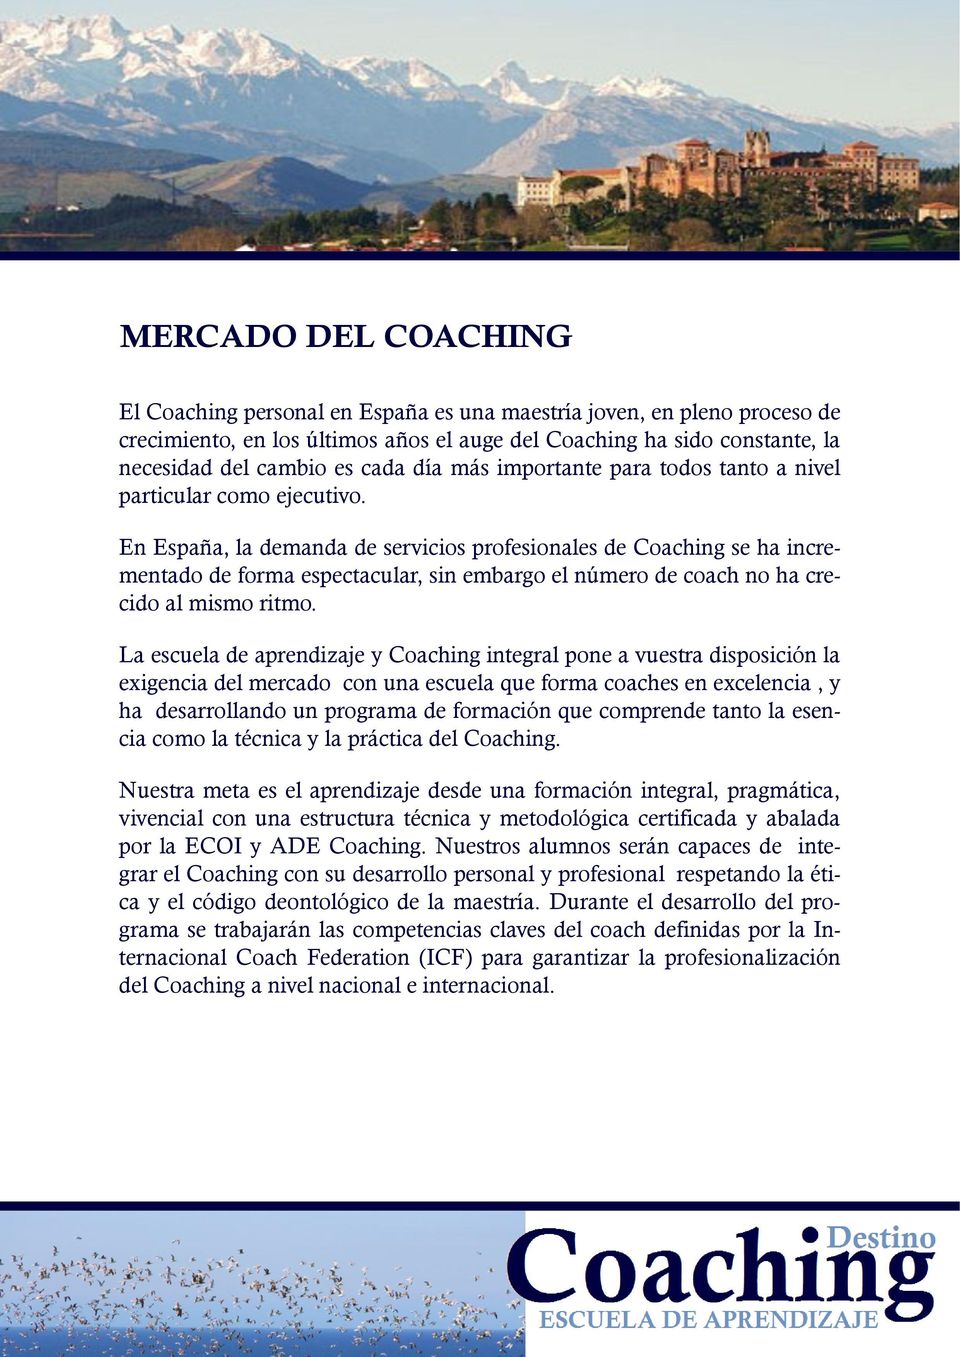 En España, la demanda de servicios profesionales de Coaching se ha incrementado de forma espectacular, sin embargo el número de coach no ha crecido al mismo ritmo.